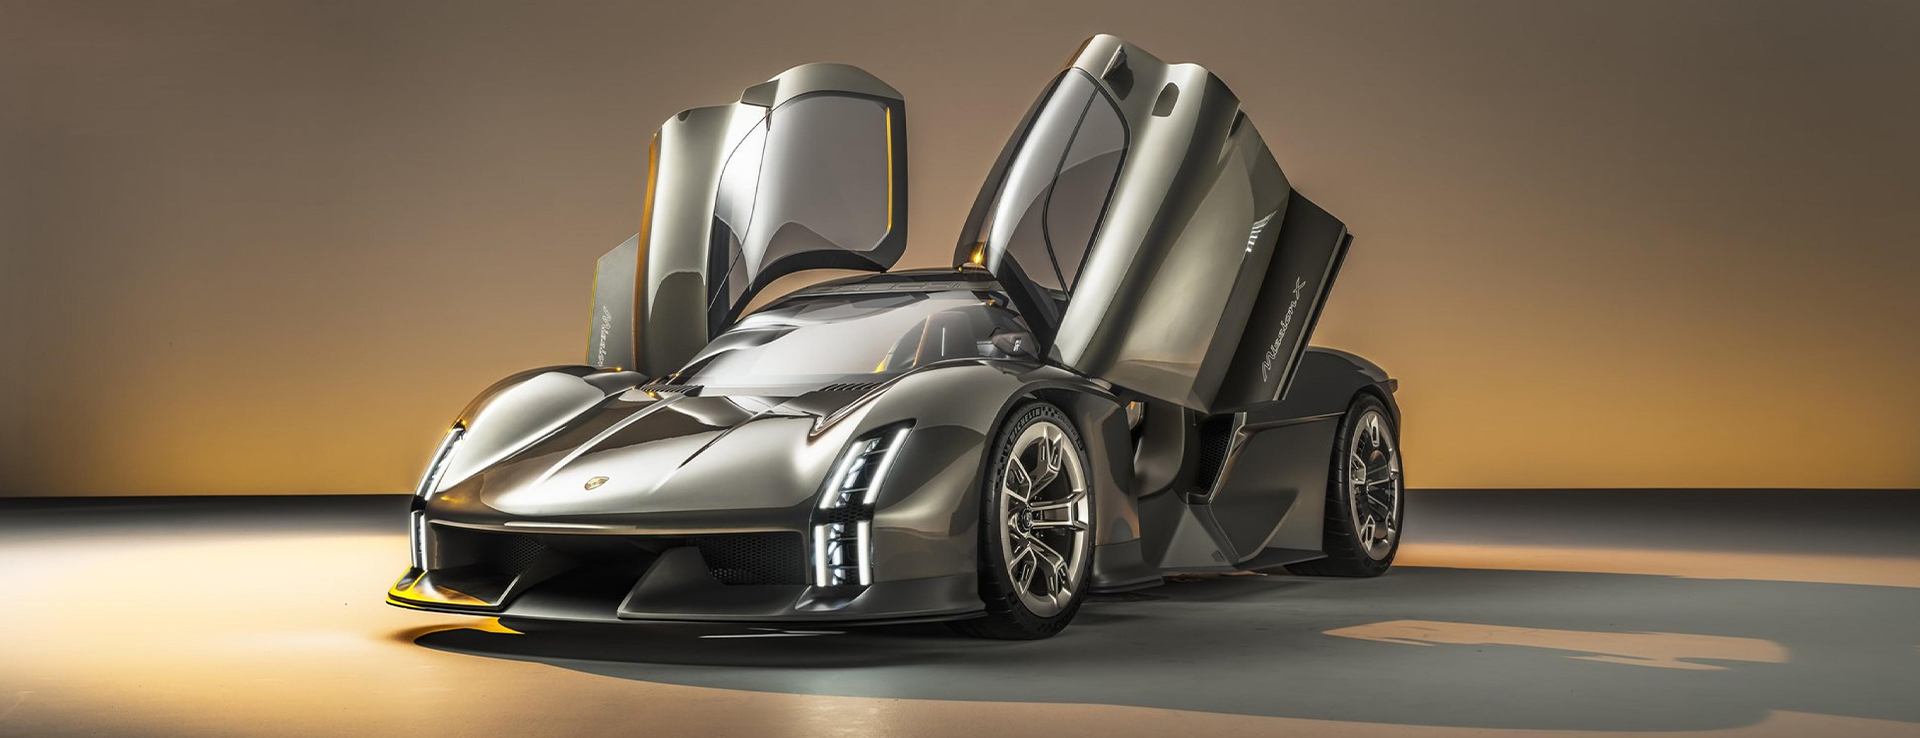 Porsche Mission X concept with Le Mans-style doors